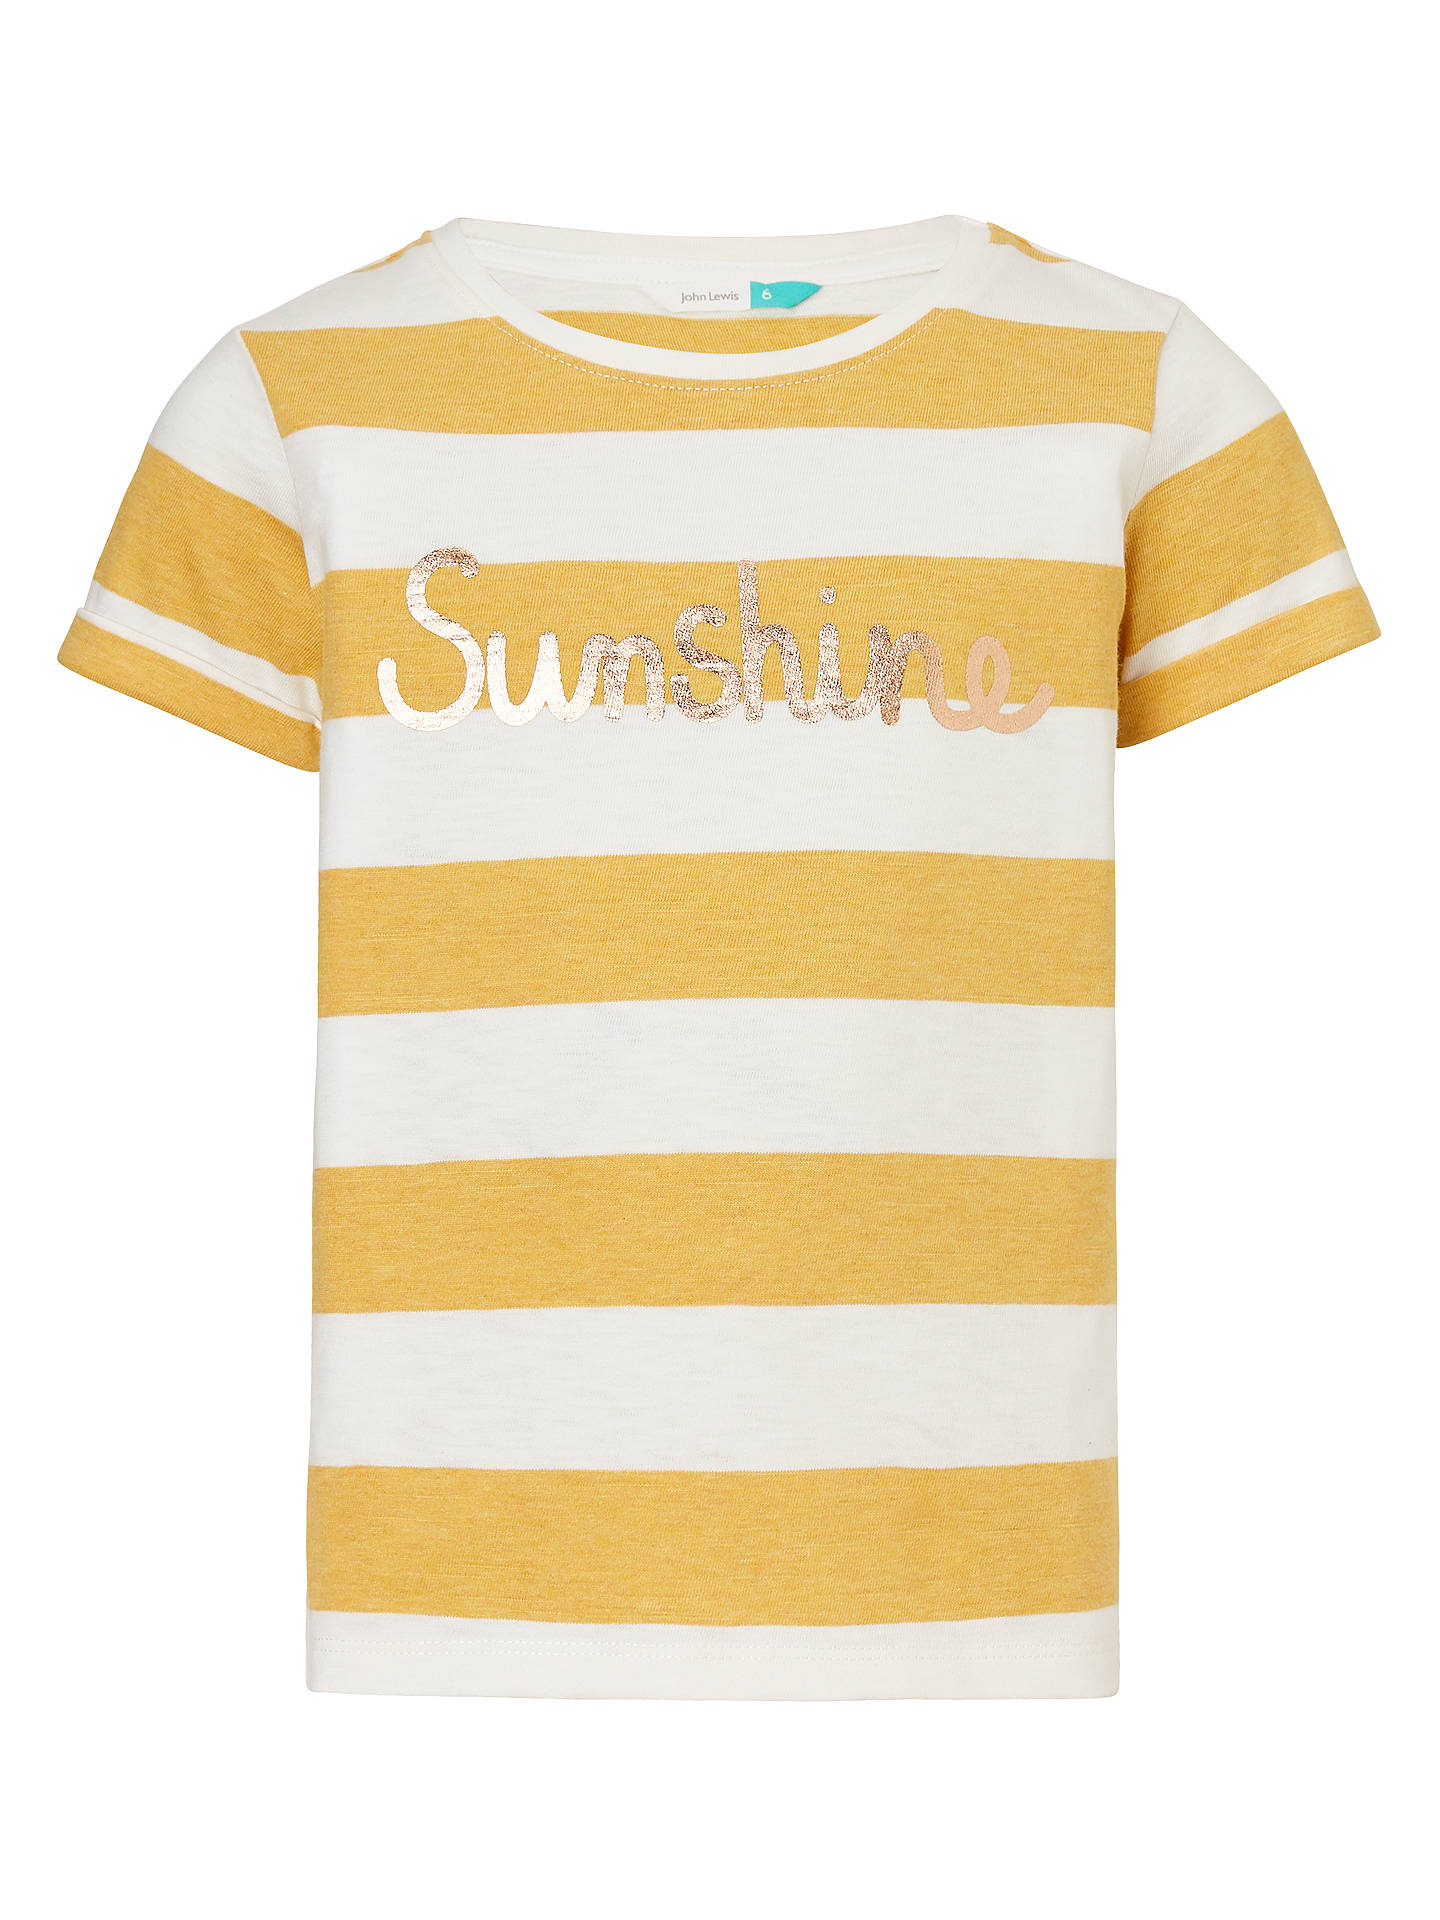 John Lewis Girls' Sunshine Stripe T-Shirt, Yellow at John Lewis & Partners